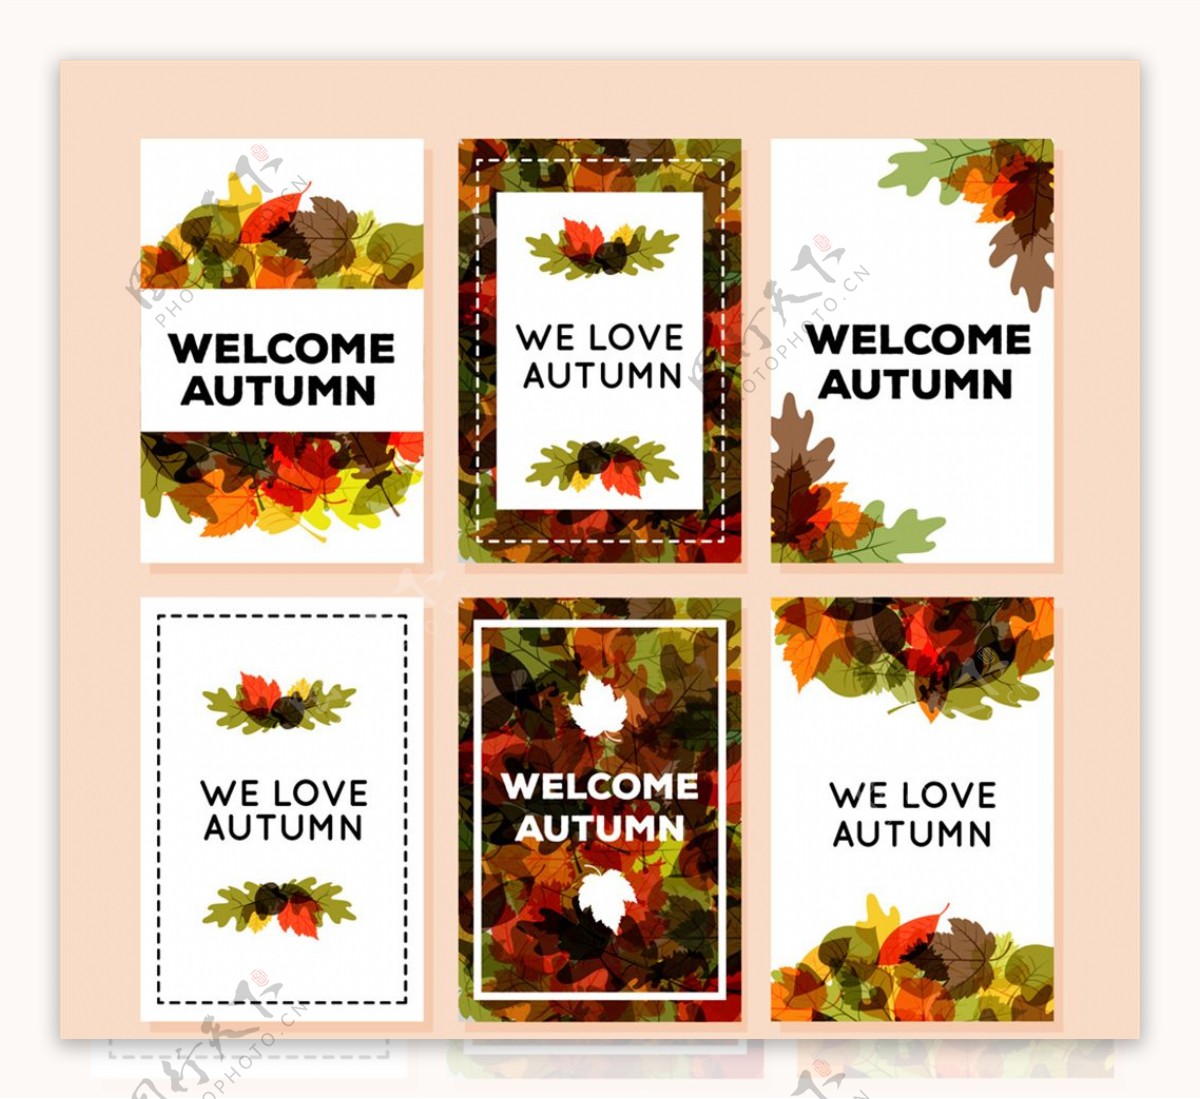 6款彩色秋季落叶卡片矢量素材